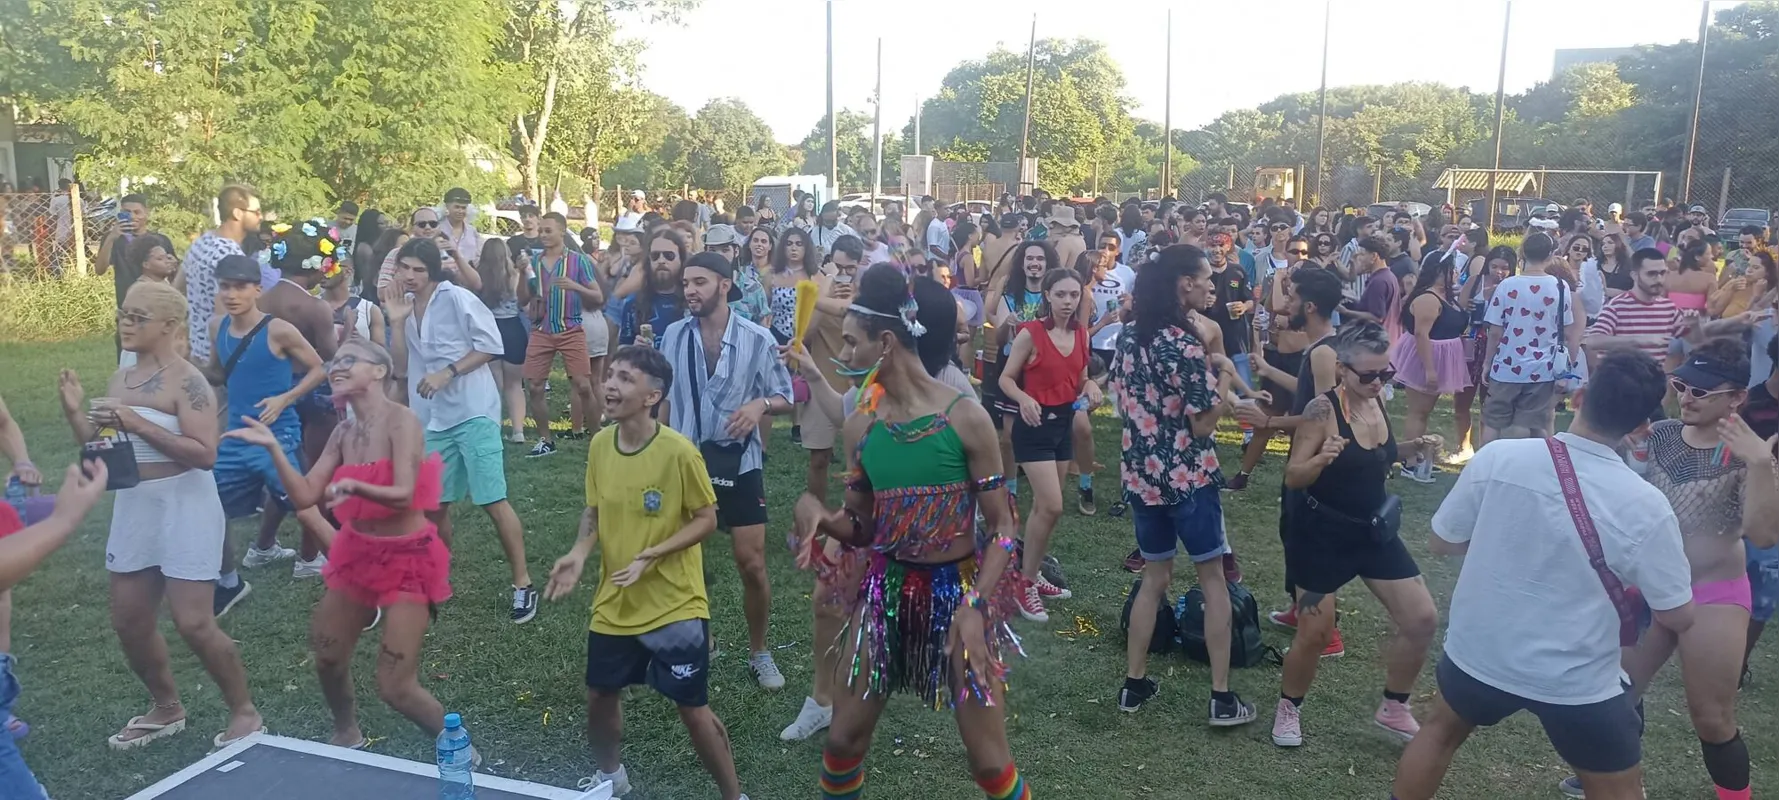 Carnaval do blocos na Vila Brasil celebrou a diversidade e todo mundo se divertindo